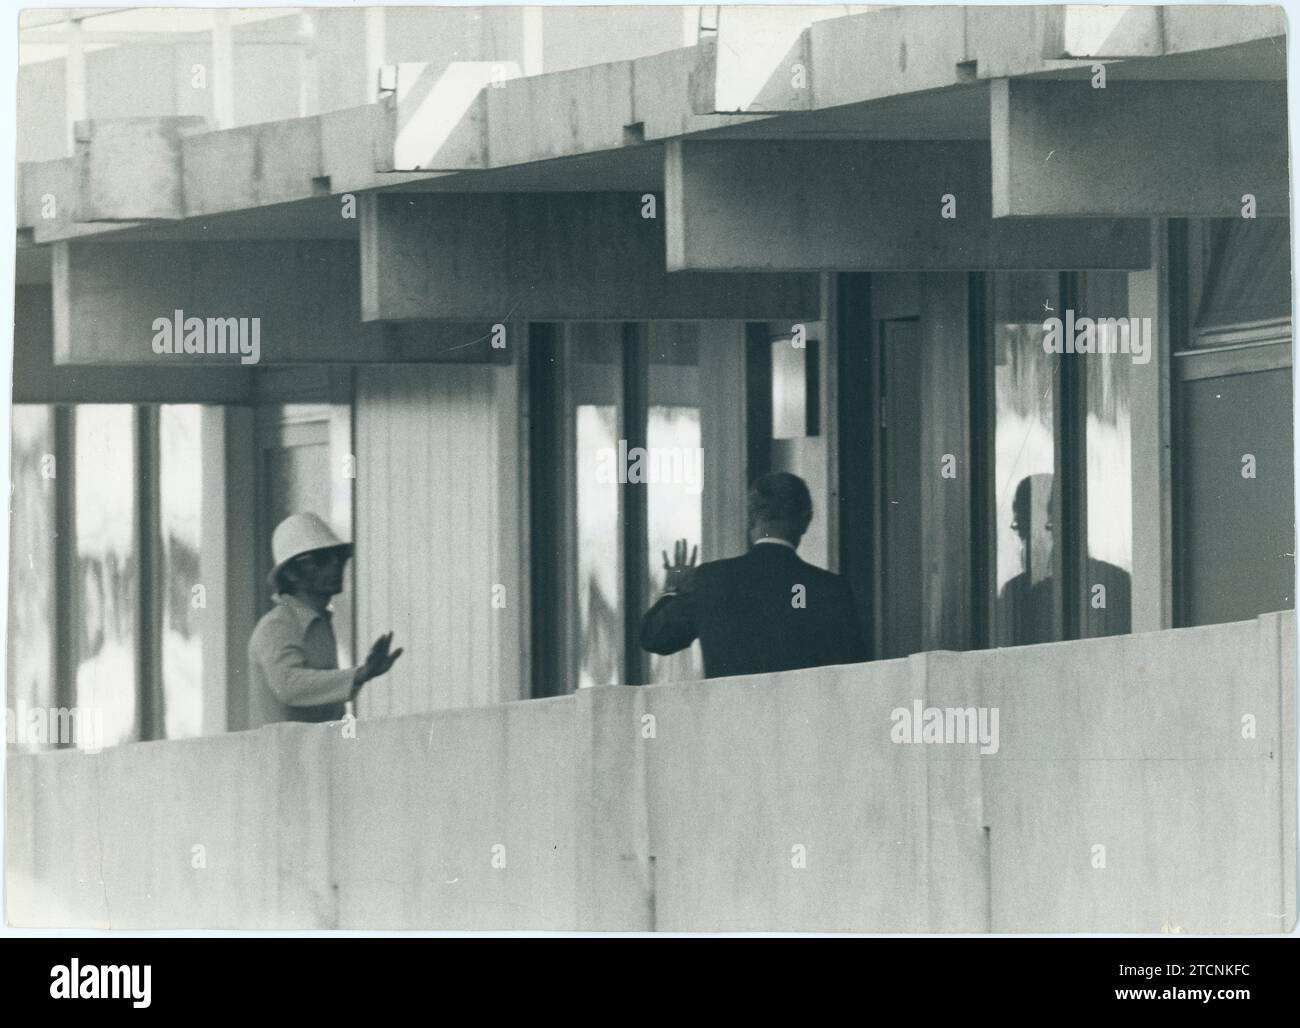 Munich (Allemagne), septembre 1972. Attaque contre le siège de l'équipe olympique israélienne lors des Jeux olympiques de Munich de 1972. Sur l'image, le ministre allemand de l'intérieur s'entretient avec l'un des terroristes dans l'étage où se trouvent les otages. Crédit : Album / Archivo ABC / Göksin Sipahioglu Banque D'Images